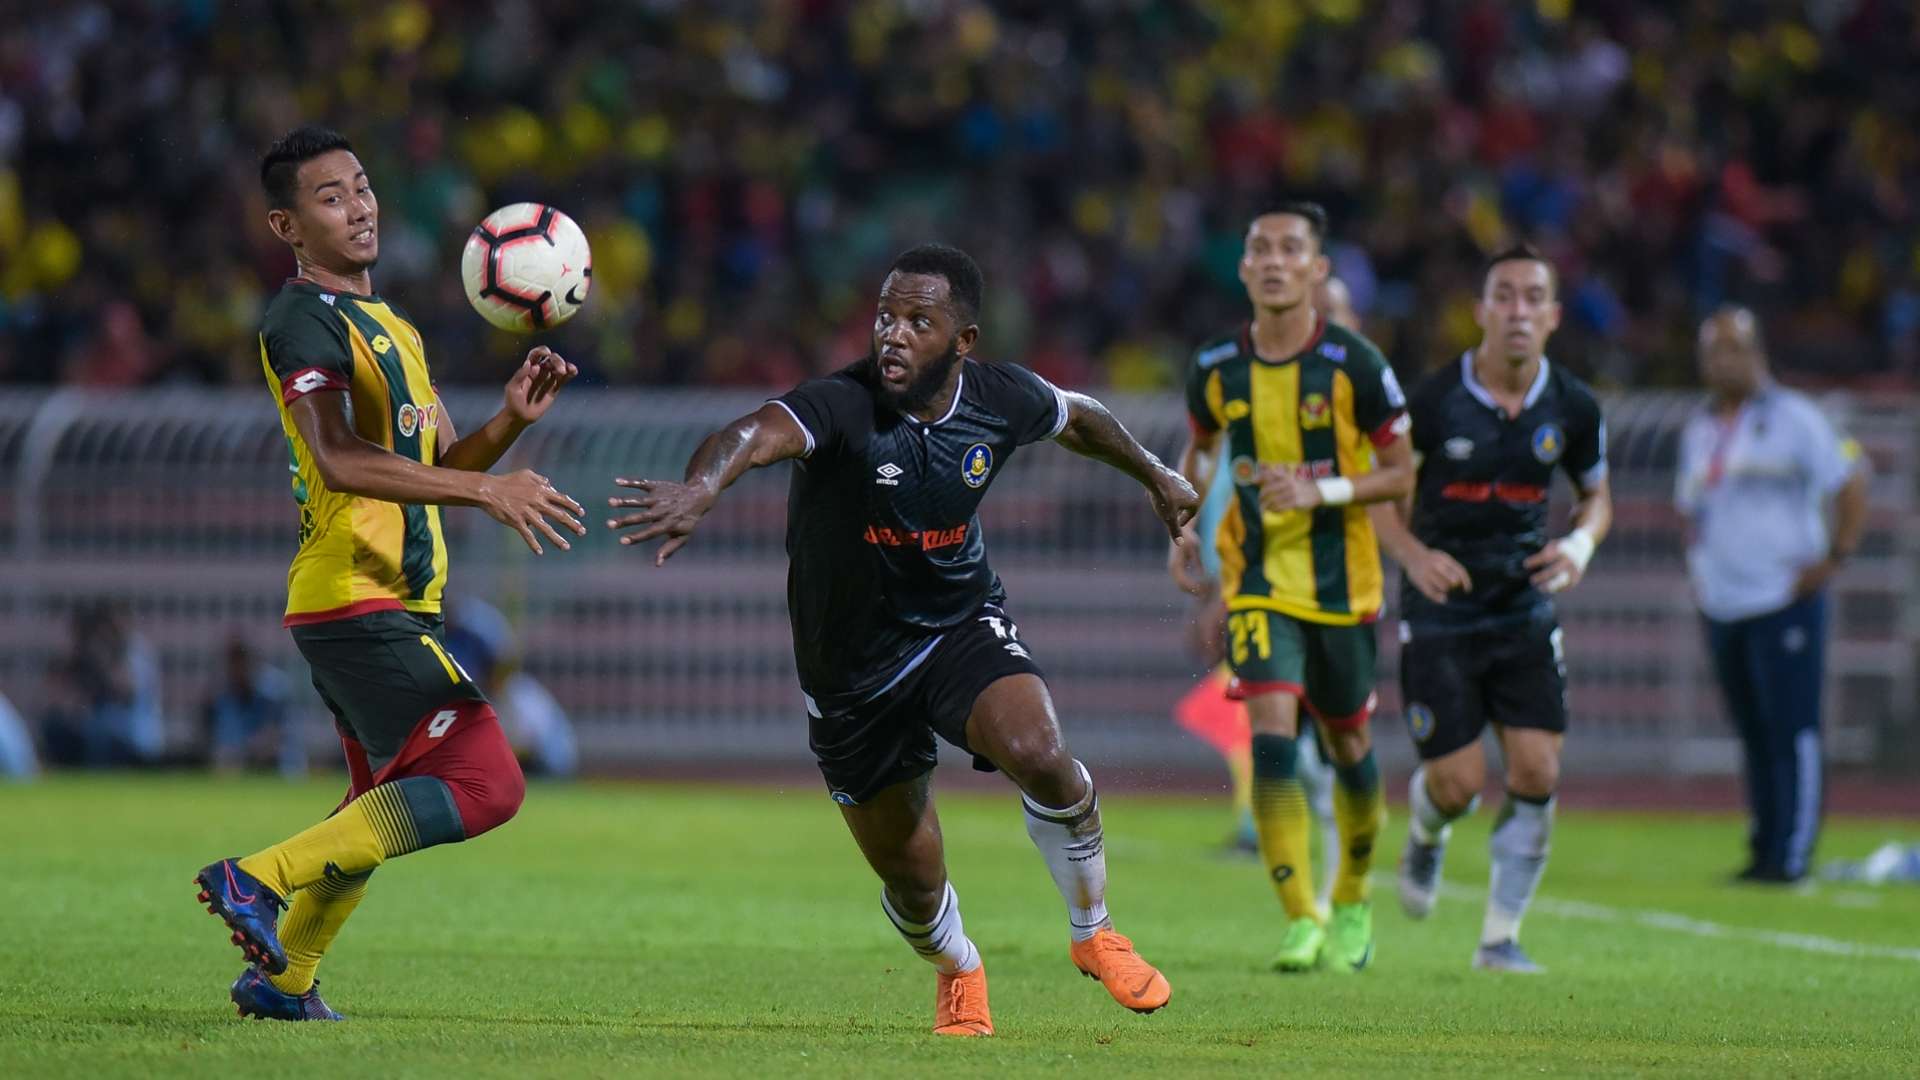 Lazarus Kaimbi, Kedah v Pahang, Malaysia Super League, 14 Jun 2019